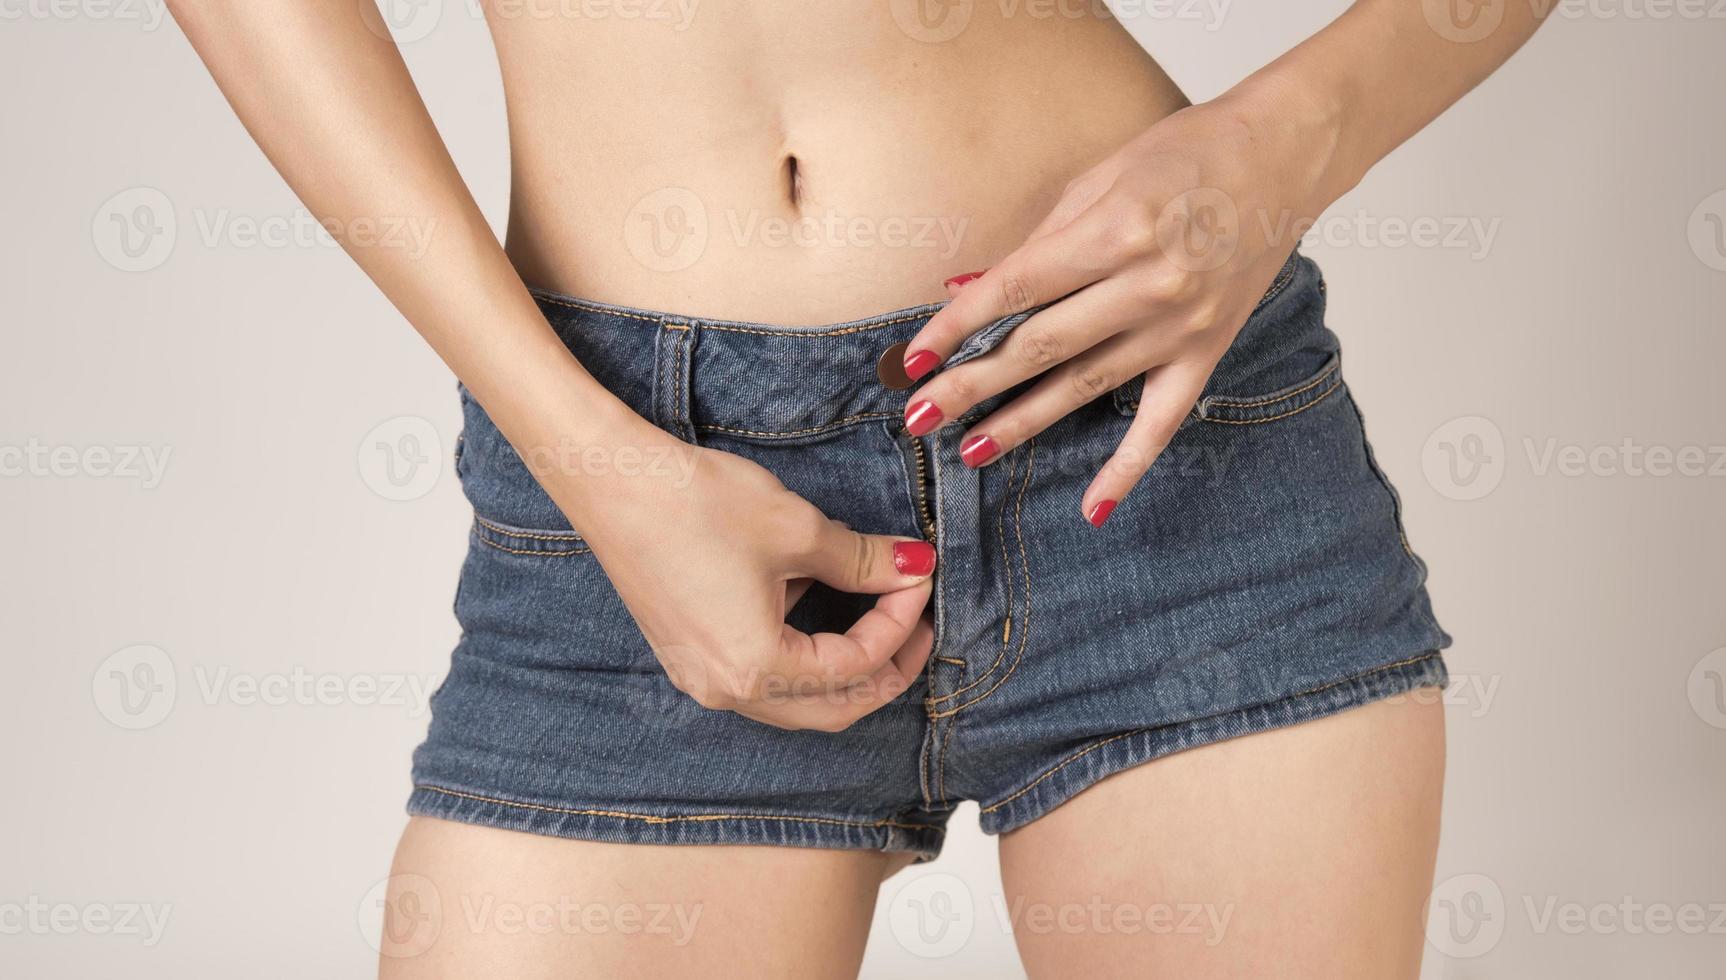 femme sexy en short jeans fashion. butin chaud parfait et hanches aux courbes érotiques. bonne morphologie sans cellulite. le sport et l'alimentation. photo